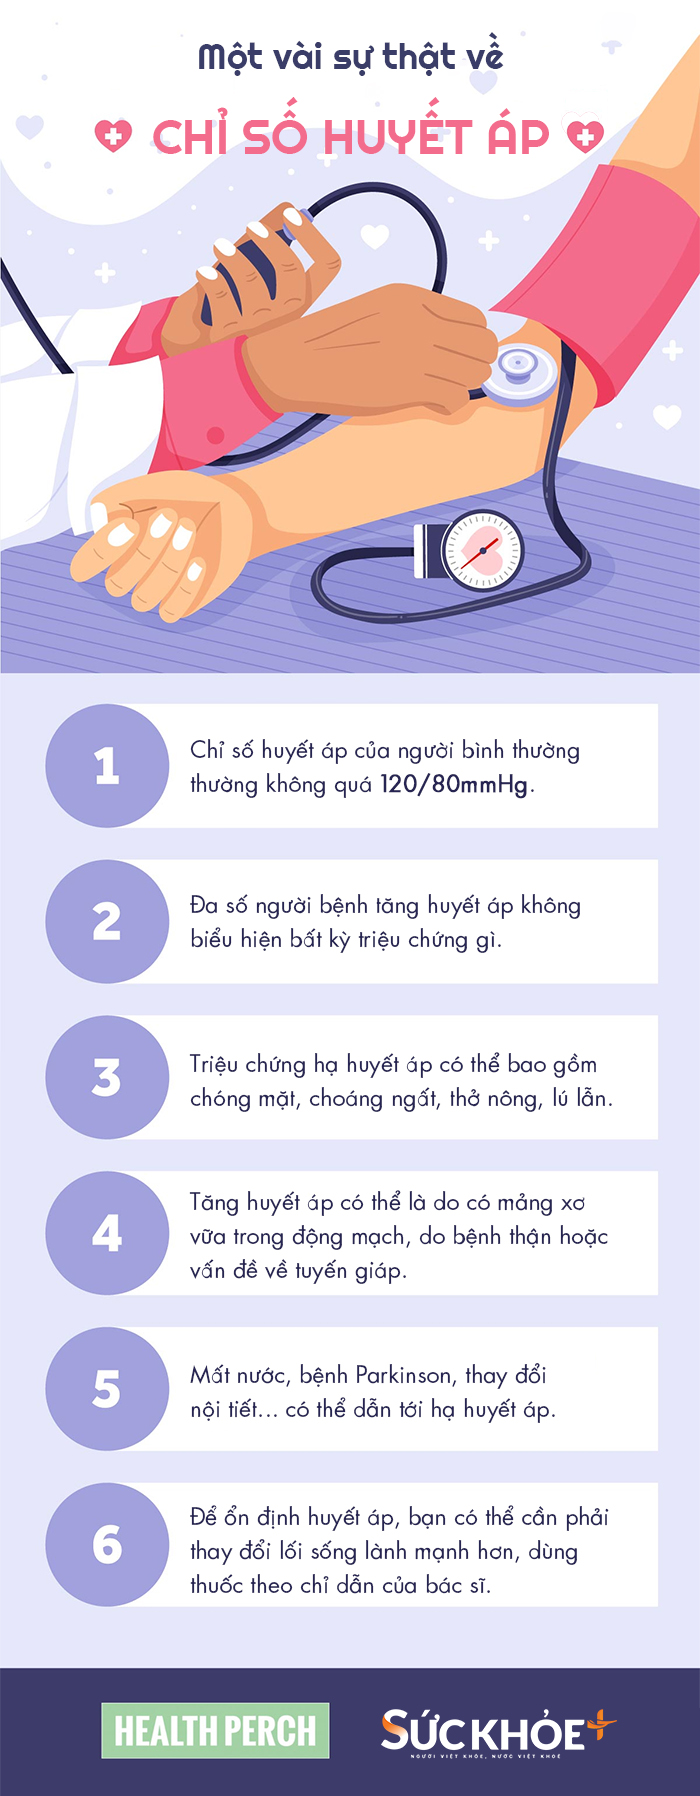 Infographic giúp bạn tìm hiểu một vài thông tin cơ bản về chỉ số huyết áp